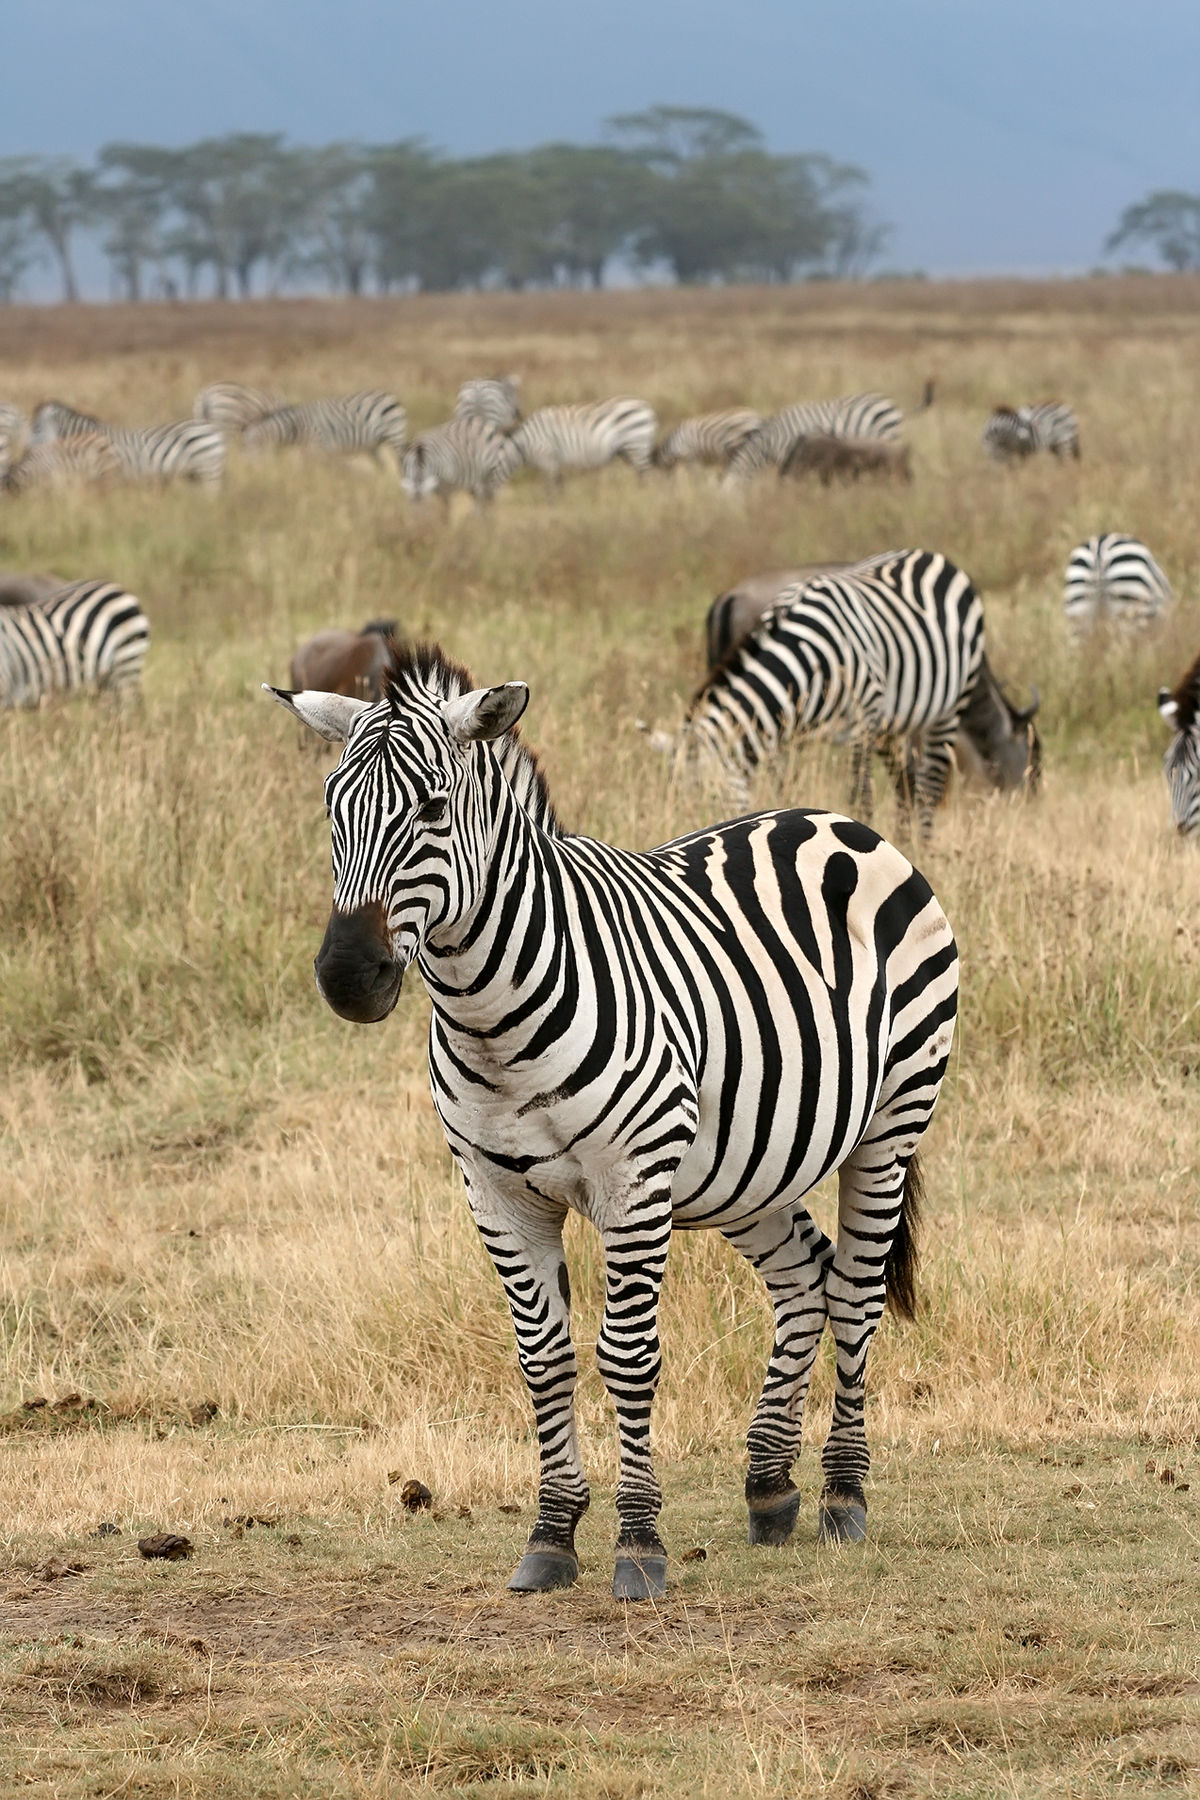 Zebras on zebra photo